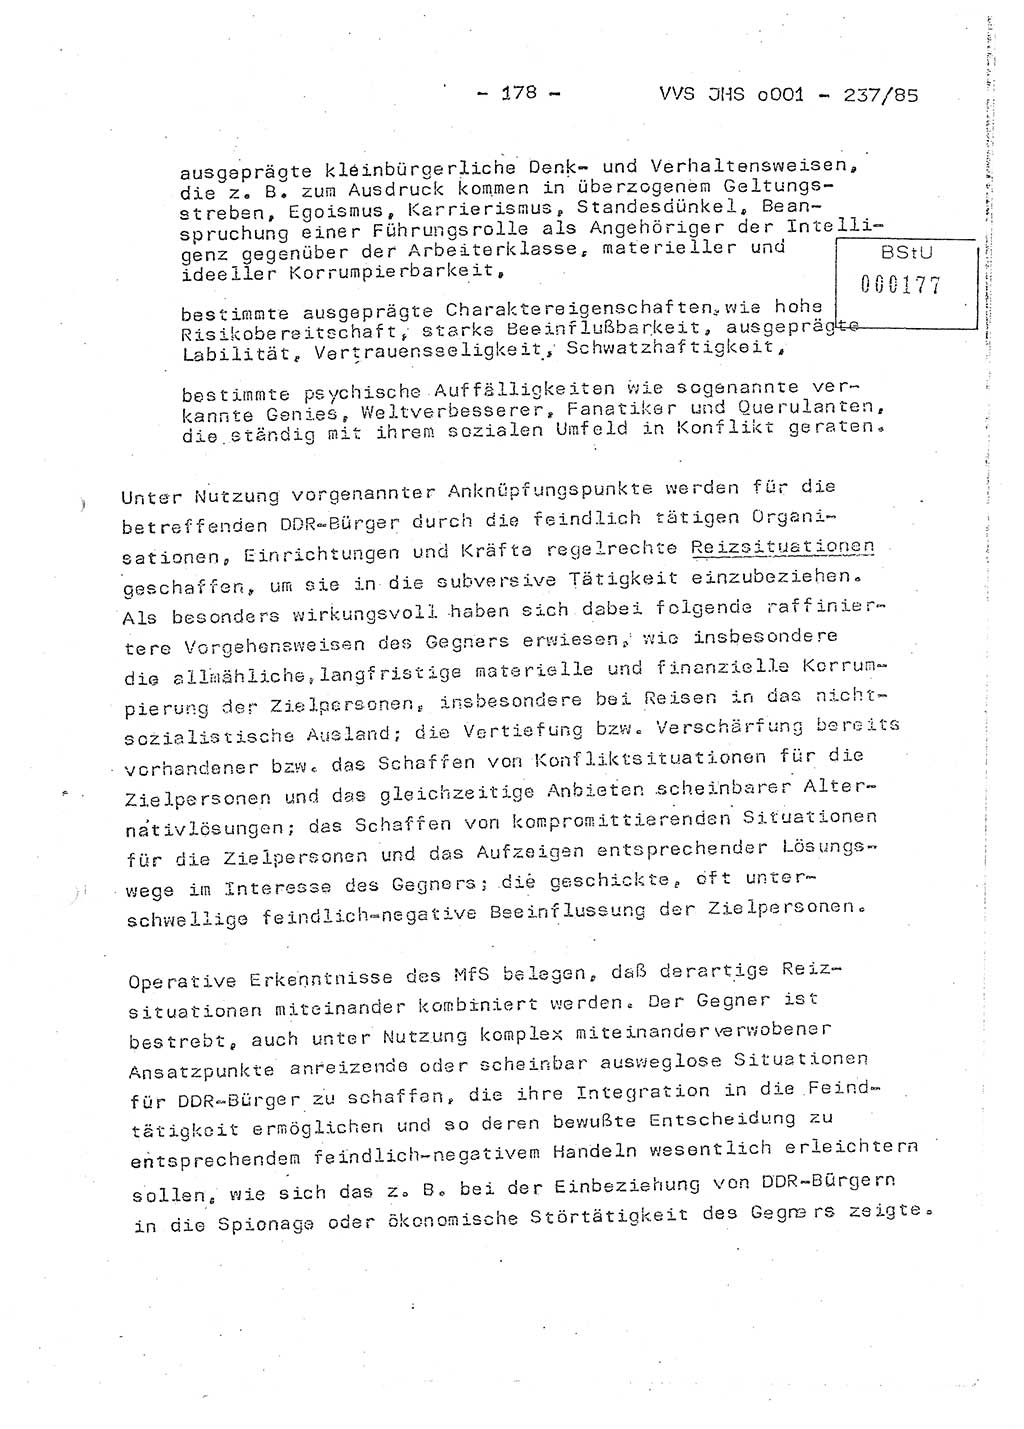 Dissertation Oberstleutnant Peter Jakulski (JHS), Oberstleutnat Christian Rudolph (HA Ⅸ), Major Horst Böttger (ZMD), Major Wolfgang Grüneberg (JHS), Major Albert Meutsch (JHS), Ministerium für Staatssicherheit (MfS) [Deutsche Demokratische Republik (DDR)], Juristische Hochschule (JHS), Vertrauliche Verschlußsache (VVS) o001-237/85, Potsdam 1985, Seite 178 (Diss. MfS DDR JHS VVS o001-237/85 1985, S. 178)